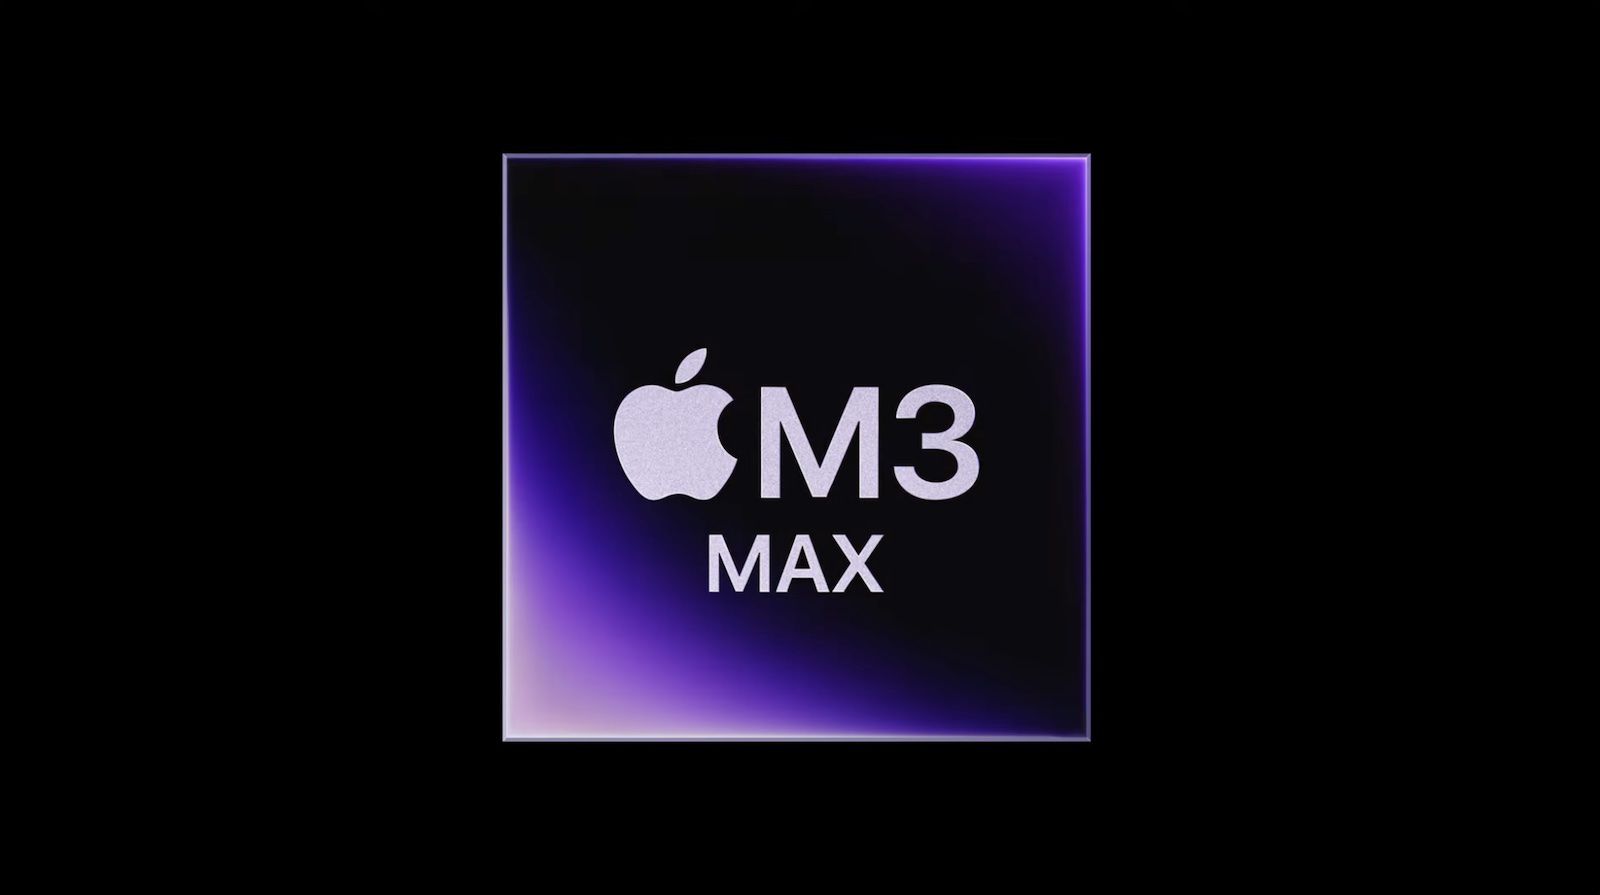 Az M3 Max chip közel olyan gyors, mint az M2 Ultra chip a korai benchmark eredmények alapján